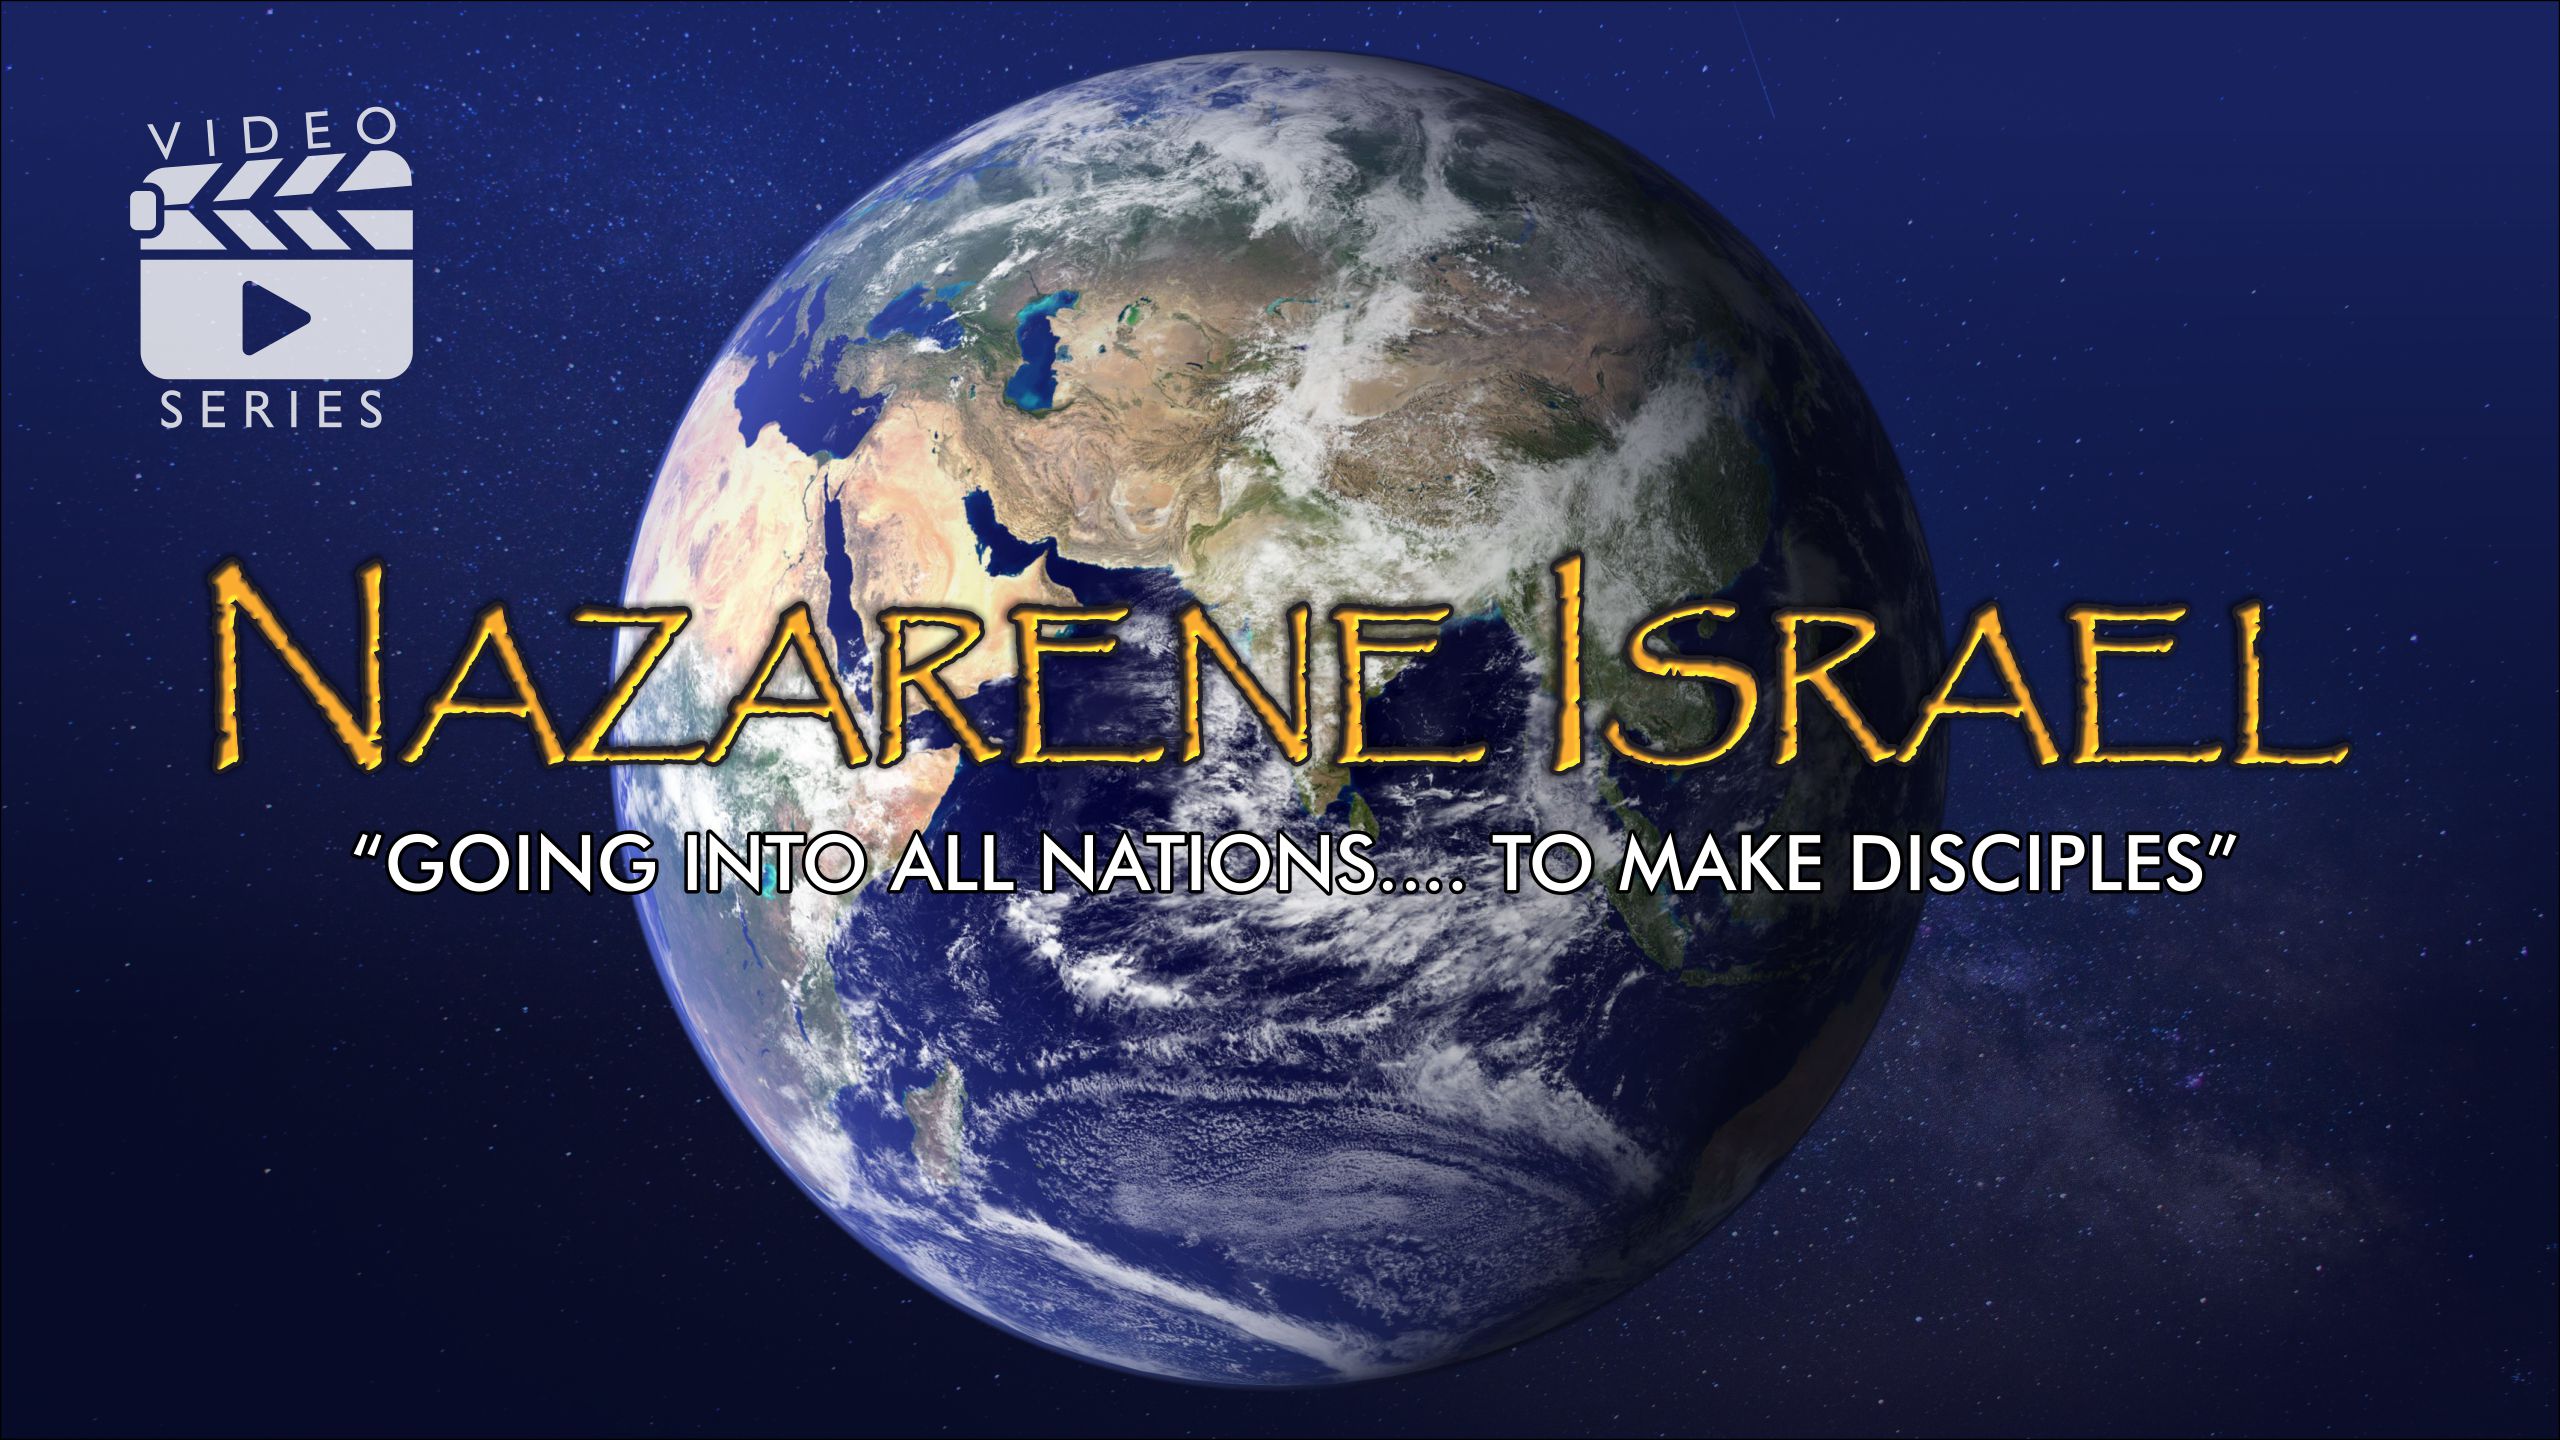 Welcome to Nazarene Israel